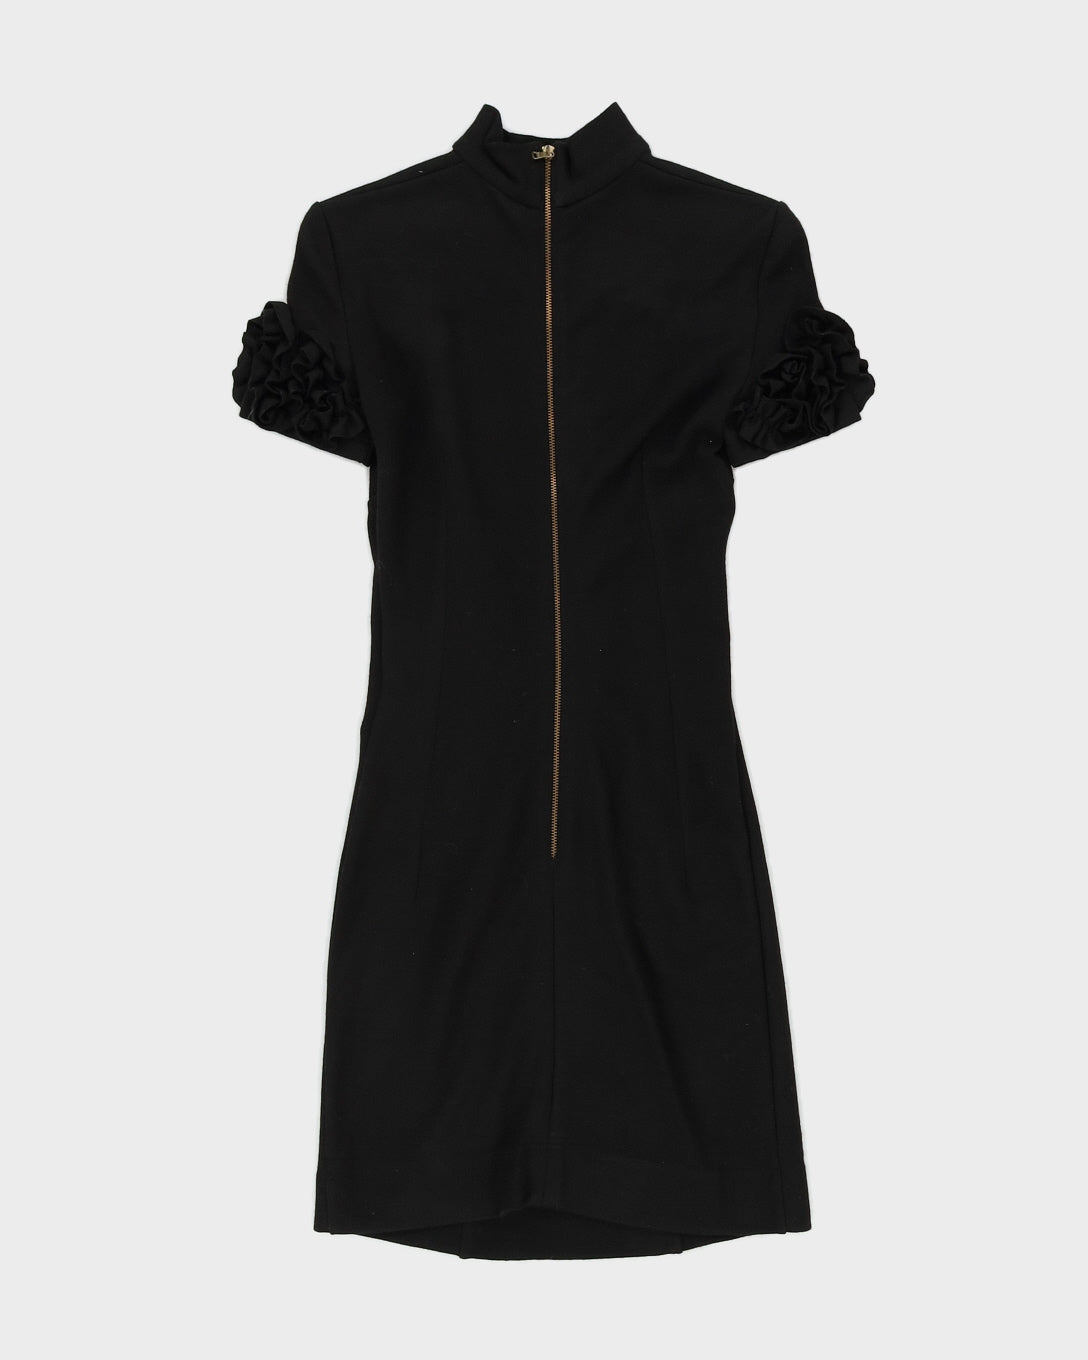 D & G Black Knitted Jersey Dress - XS